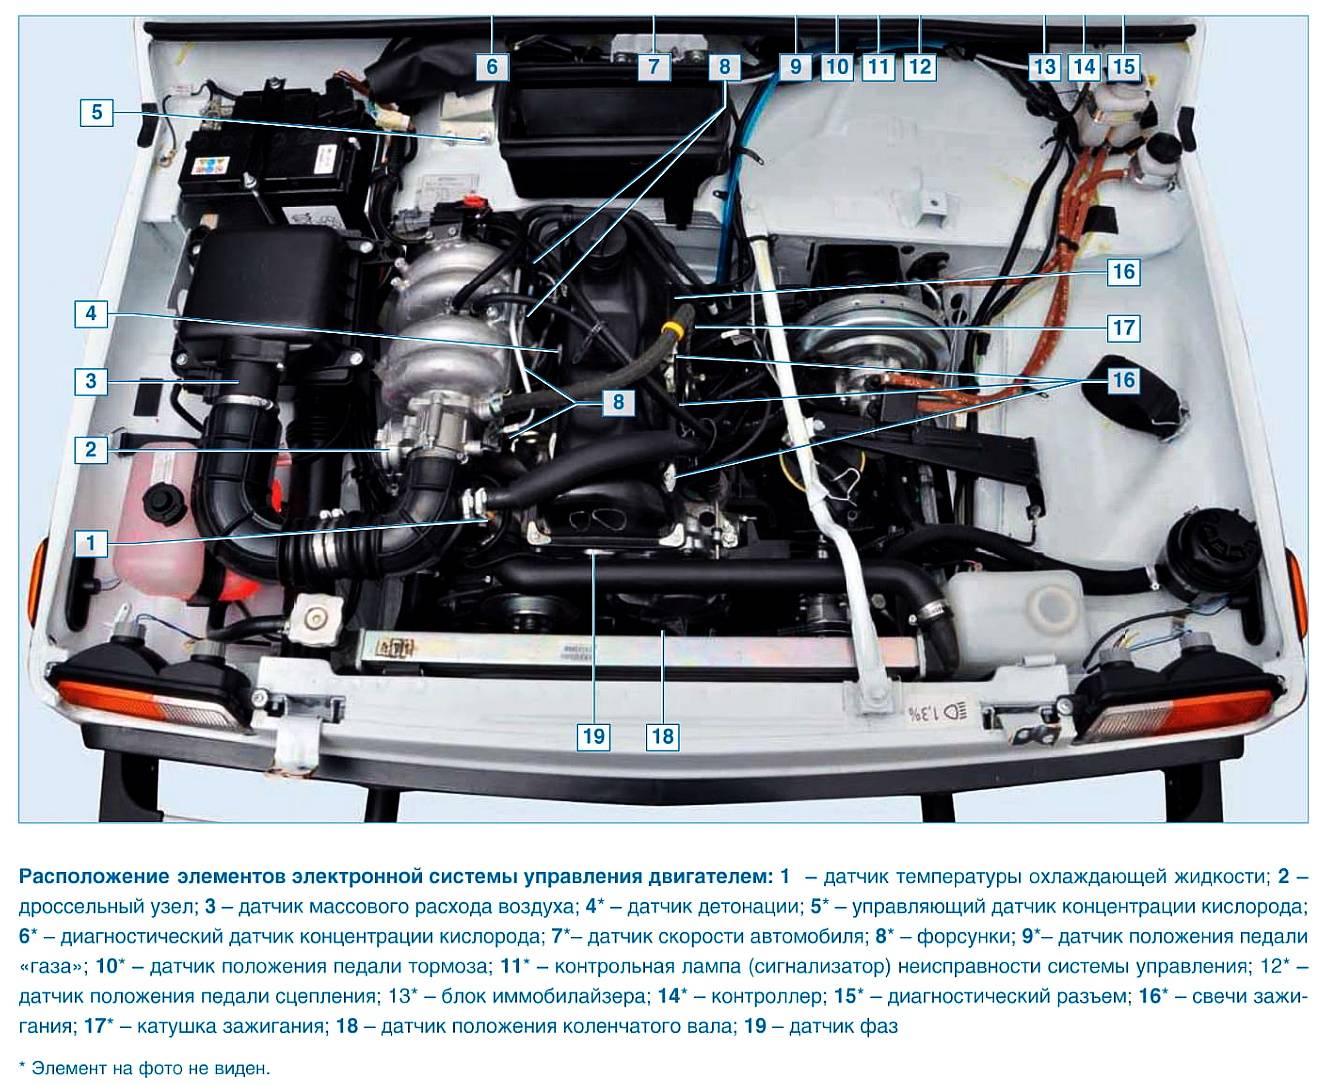 Системы управления бензиновым двигателем | автомобильный справочник